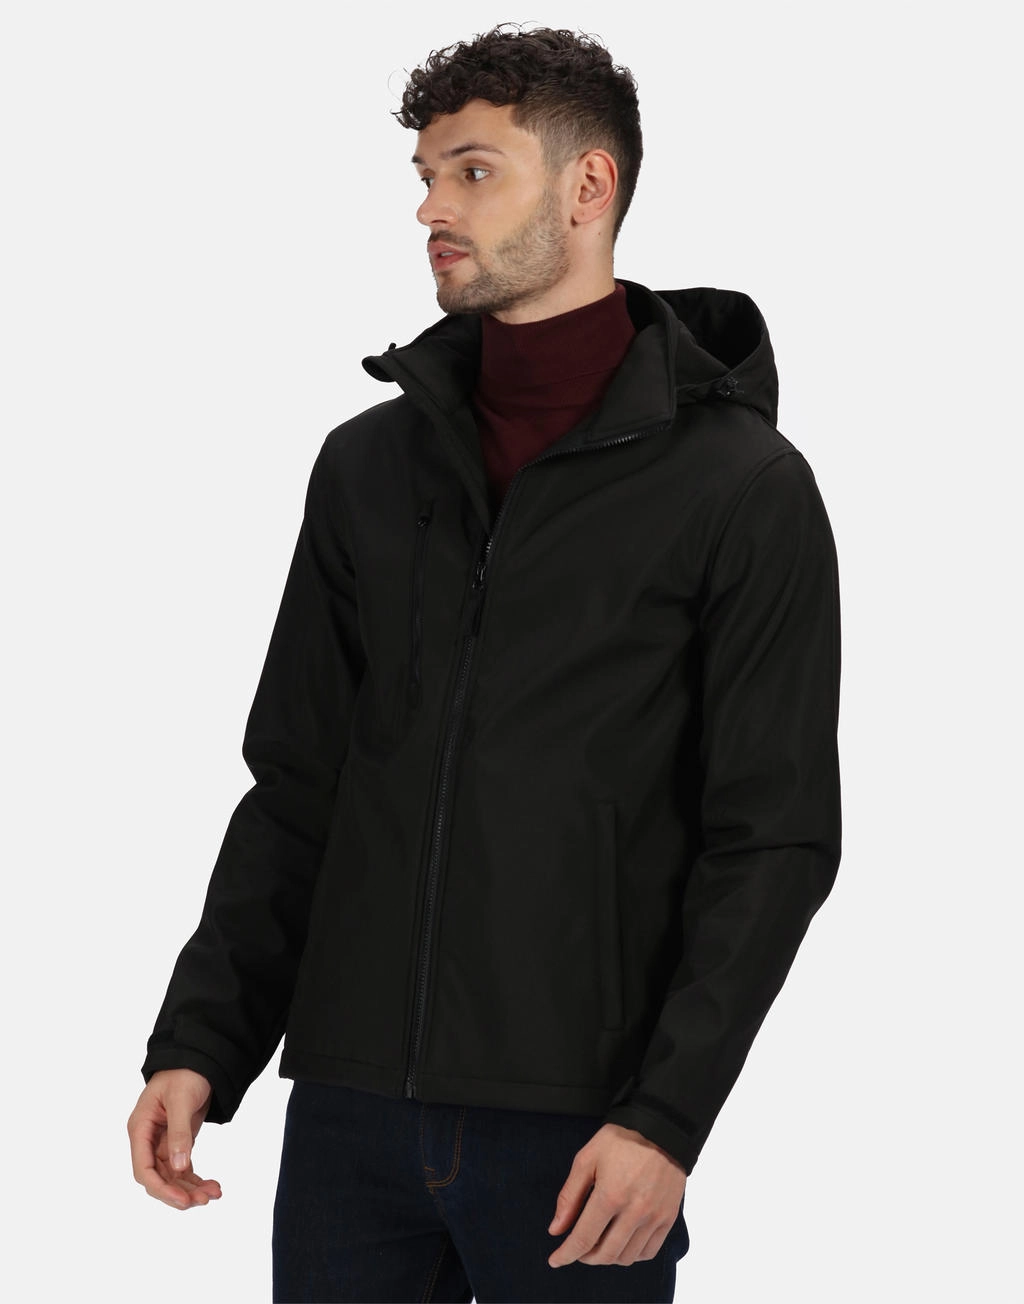 Venturer 3-Layer Hooded Softshell Jacket zum Besticken und Bedrucken mit Ihren Logo, Schriftzug oder Motiv.